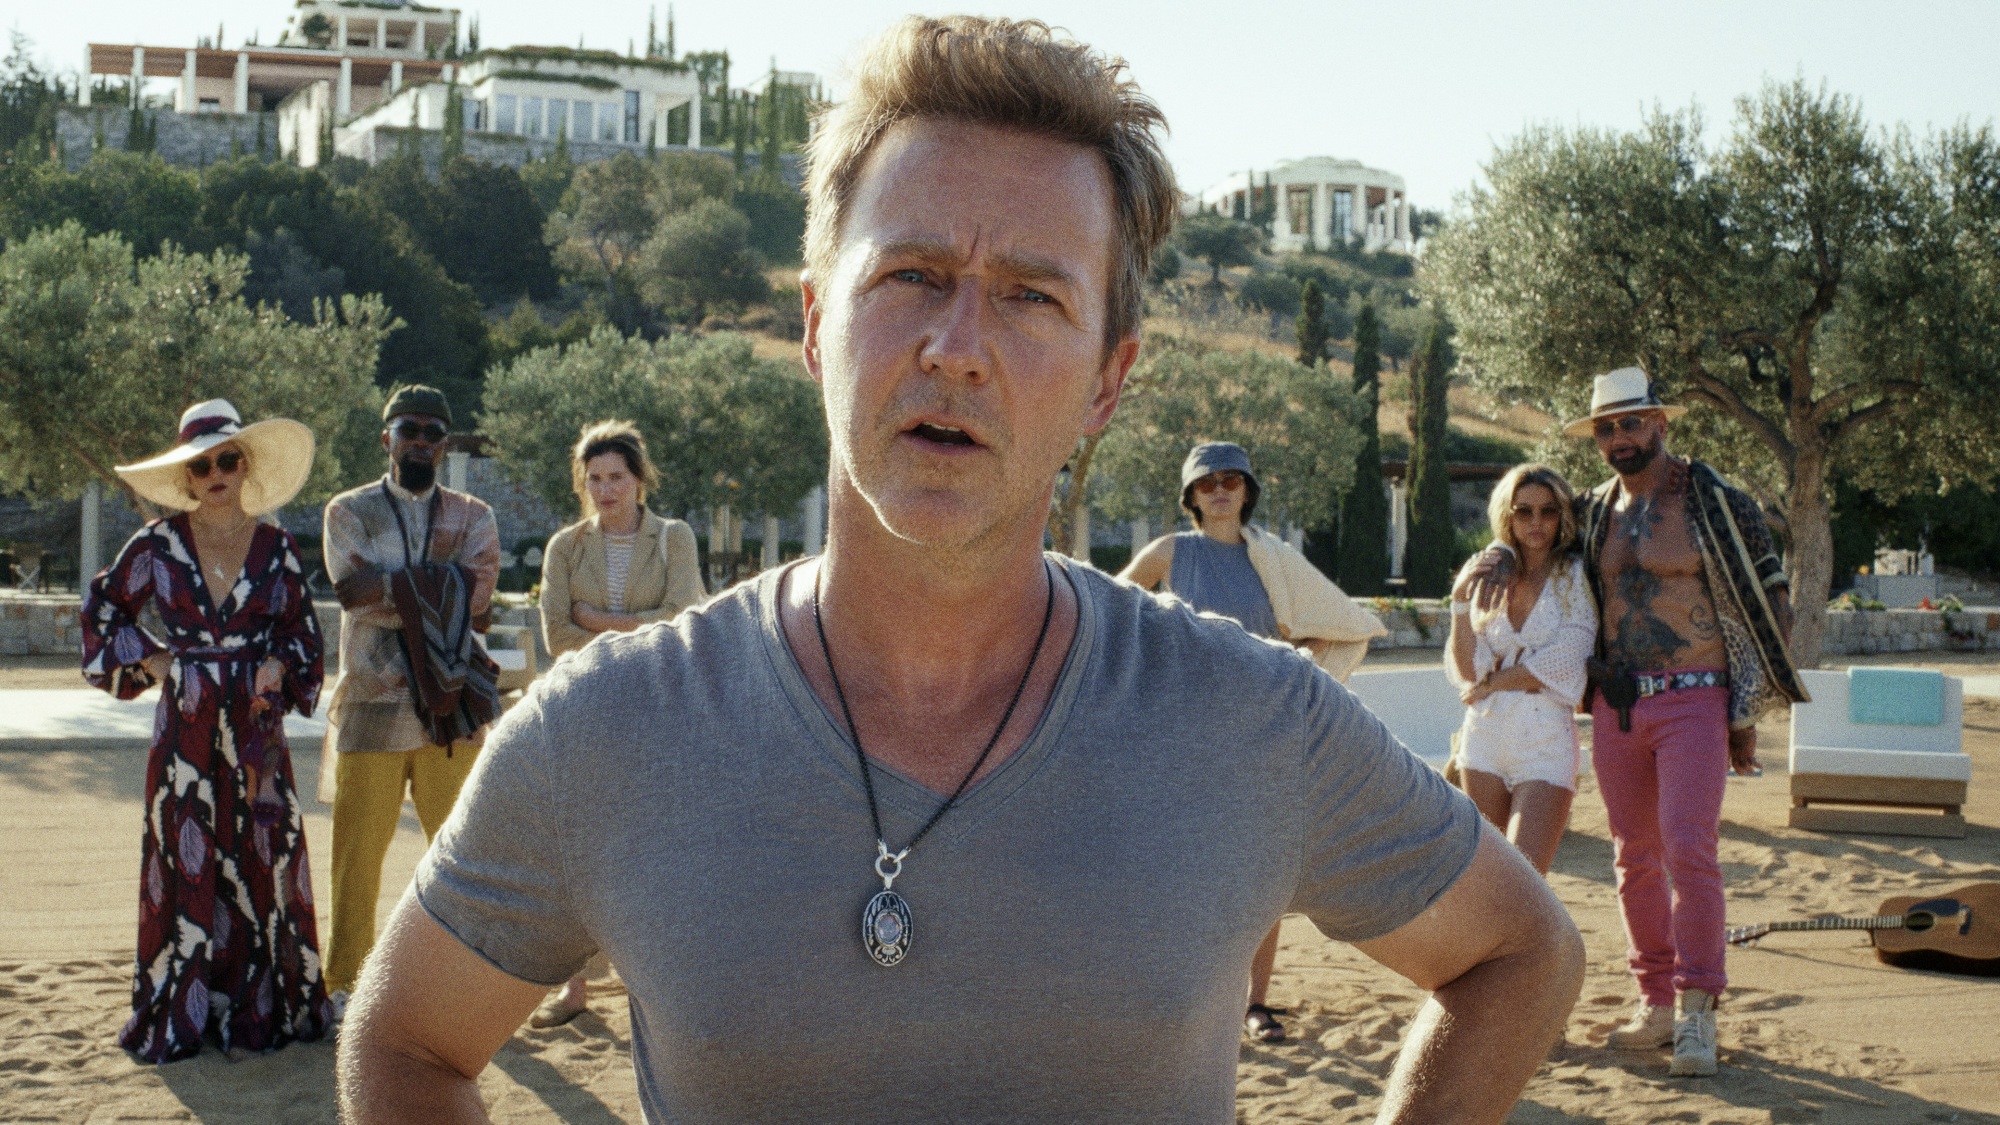 Un groupe de personnes se tient sur une plage, avec un homme devant qui pose ses mains sur ses hanches.